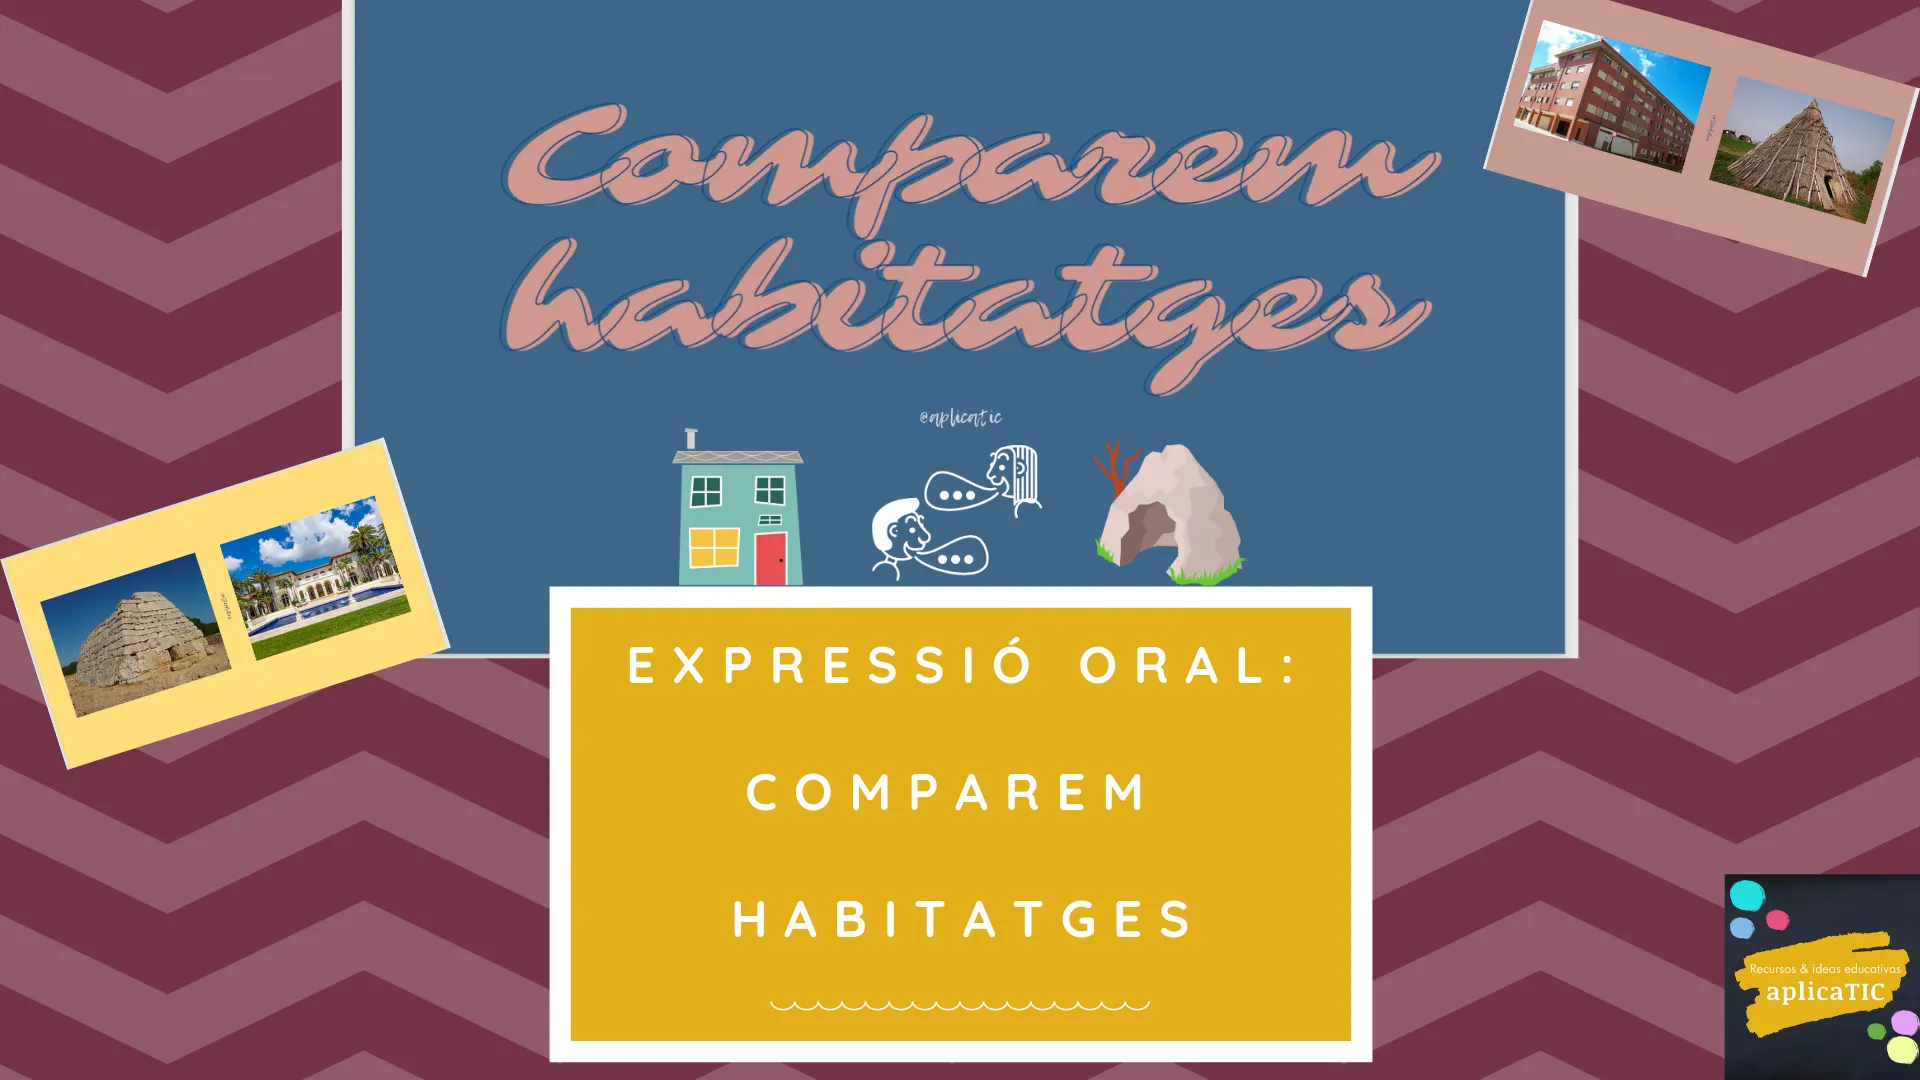 Expressió oral: Comparem habitatges